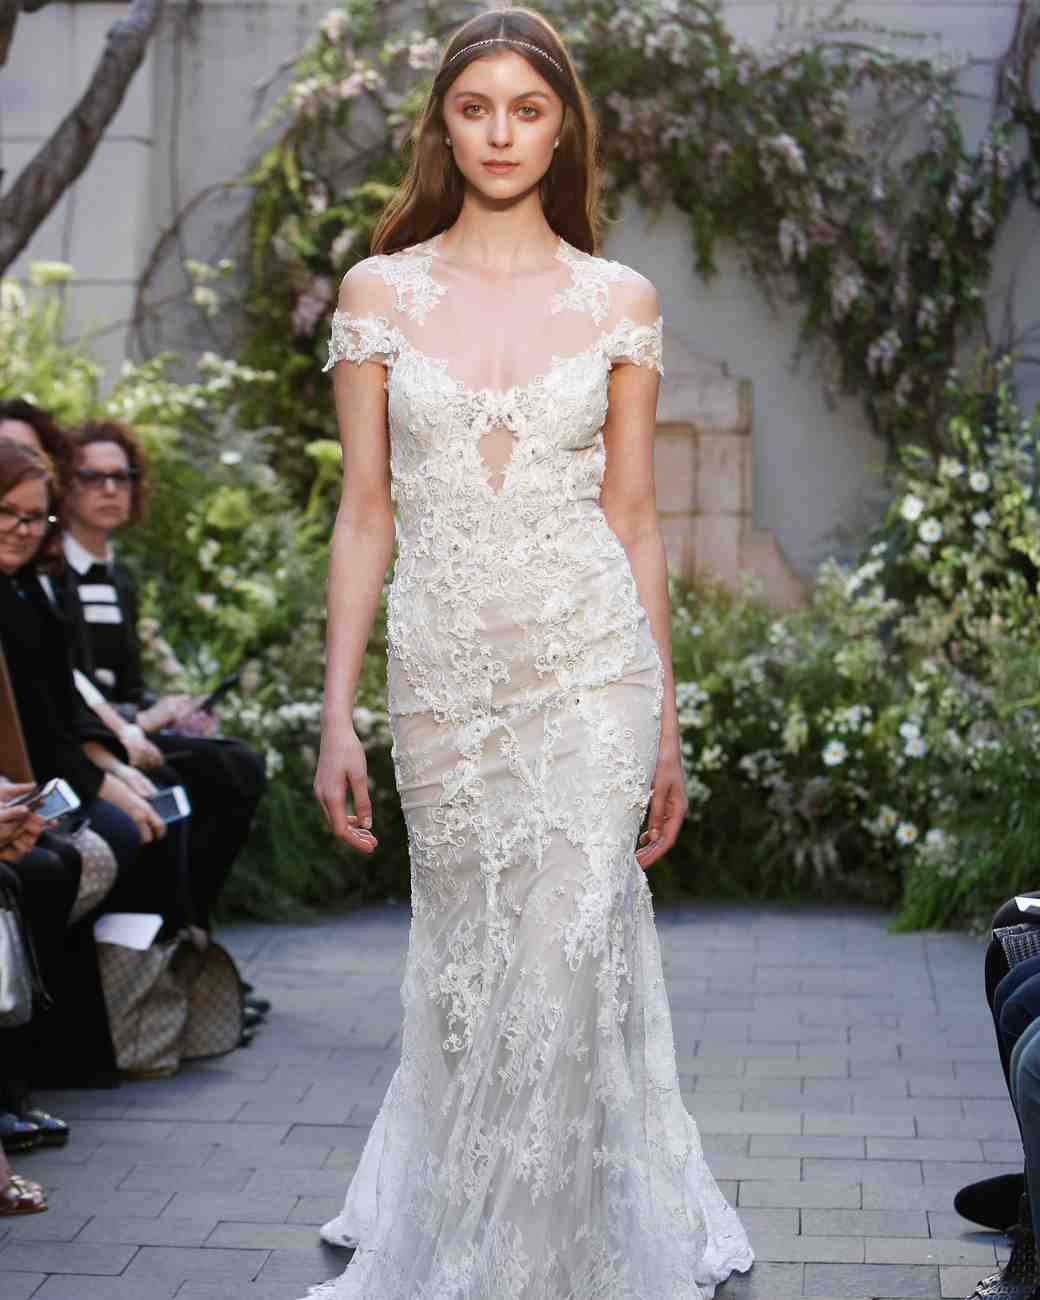 Monique Lhuillier Spring 2017 Wedding Dress Collection | Martha Stewart ...